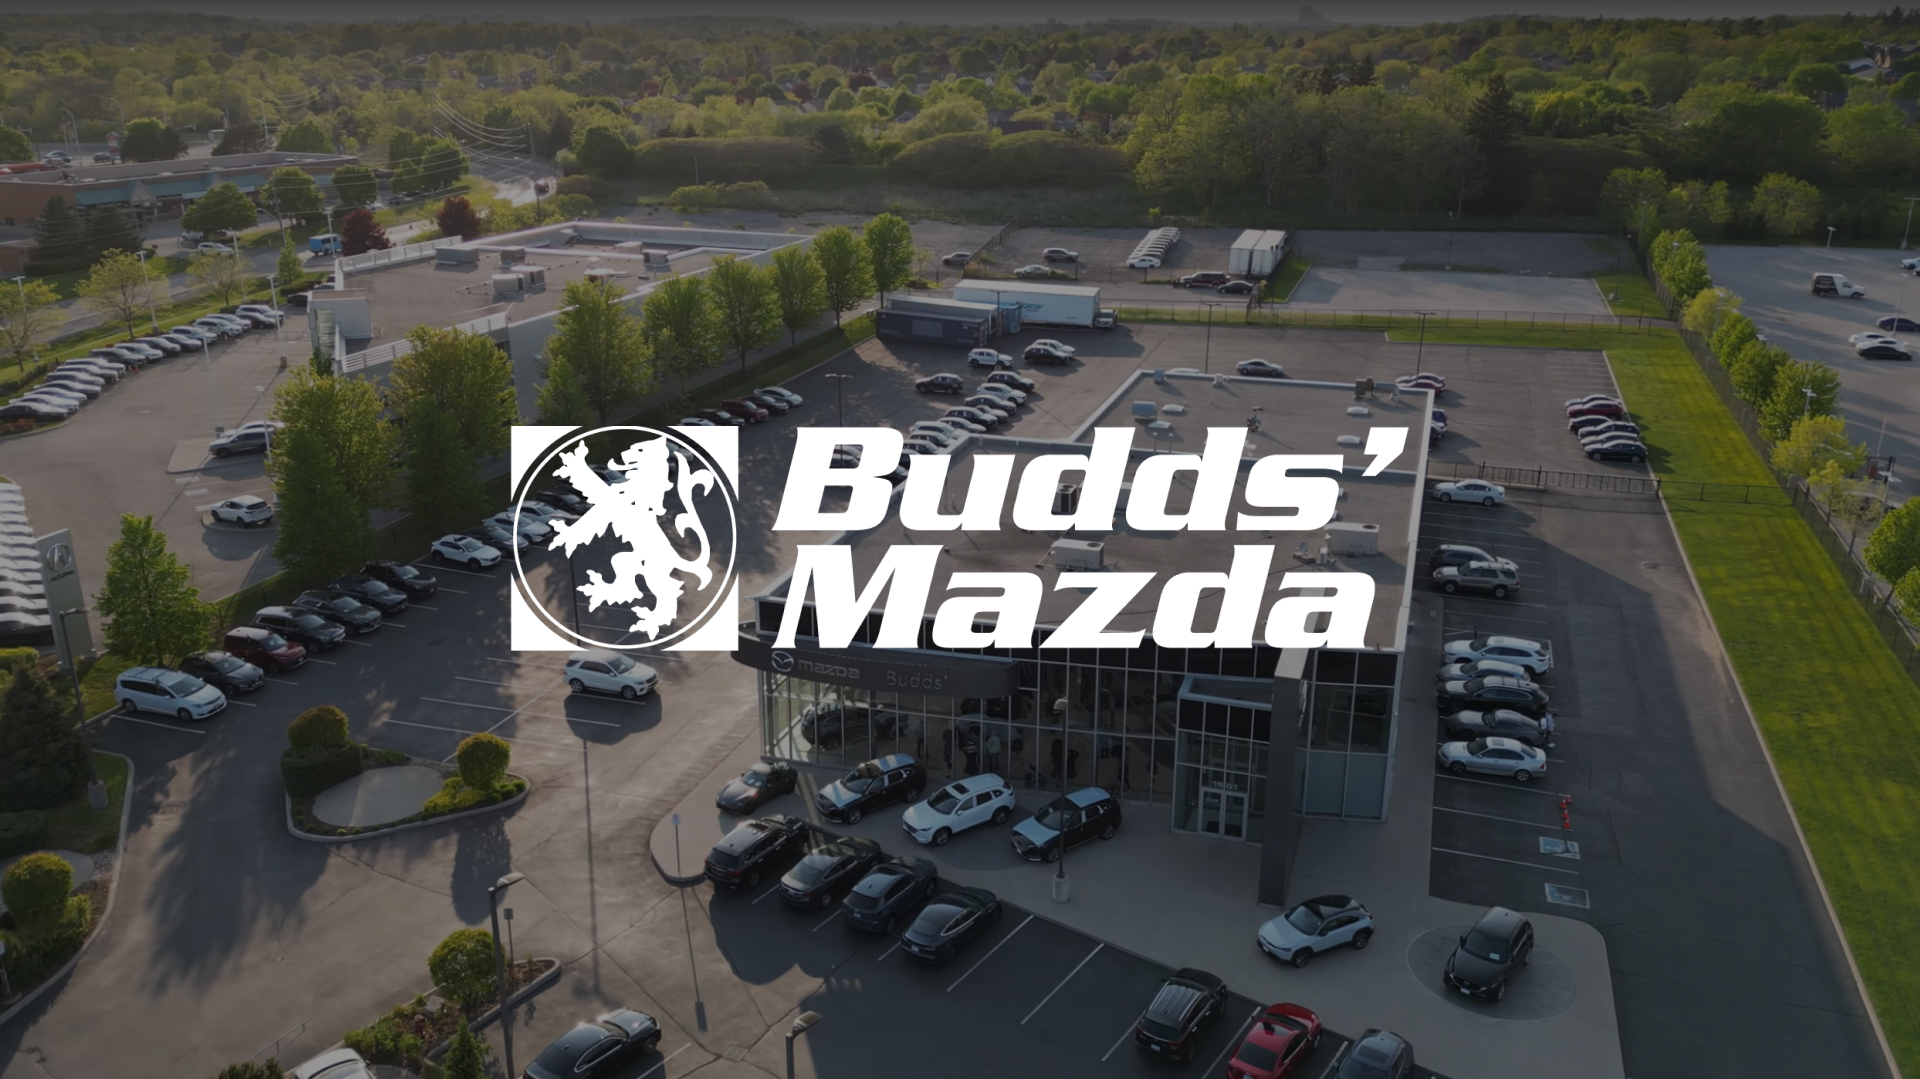 Budds Mazda